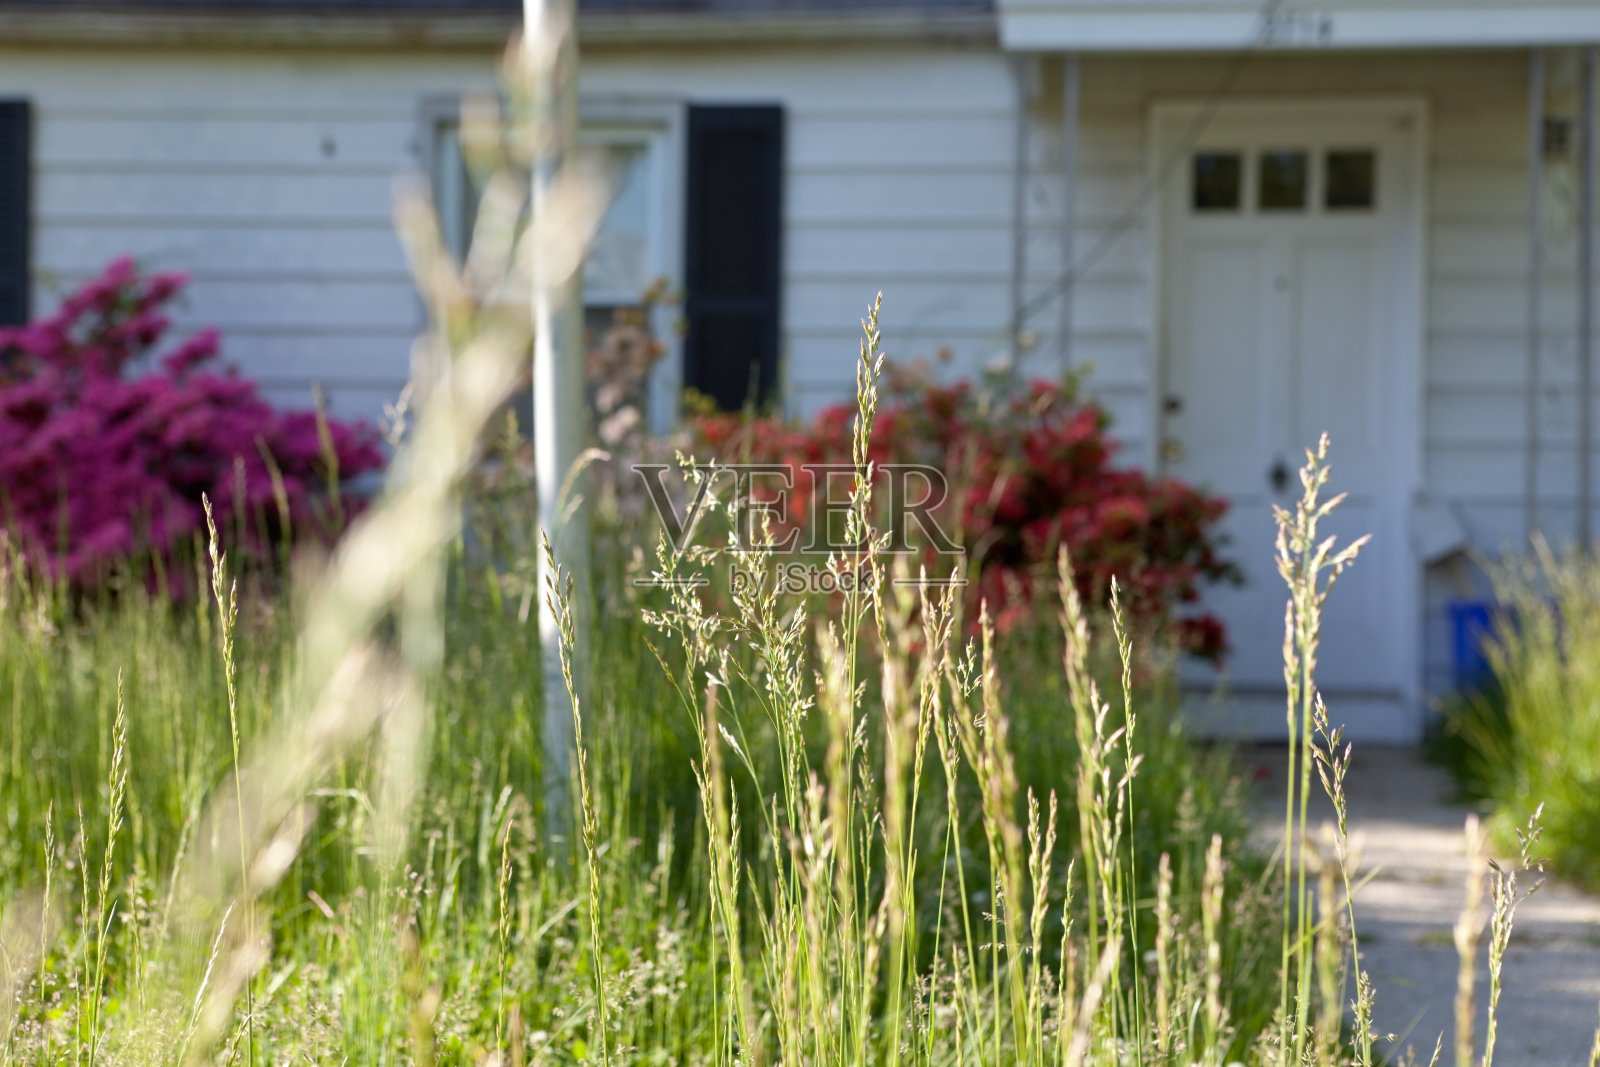 马里兰州科德角独户住宅外的长草照片摄影图片